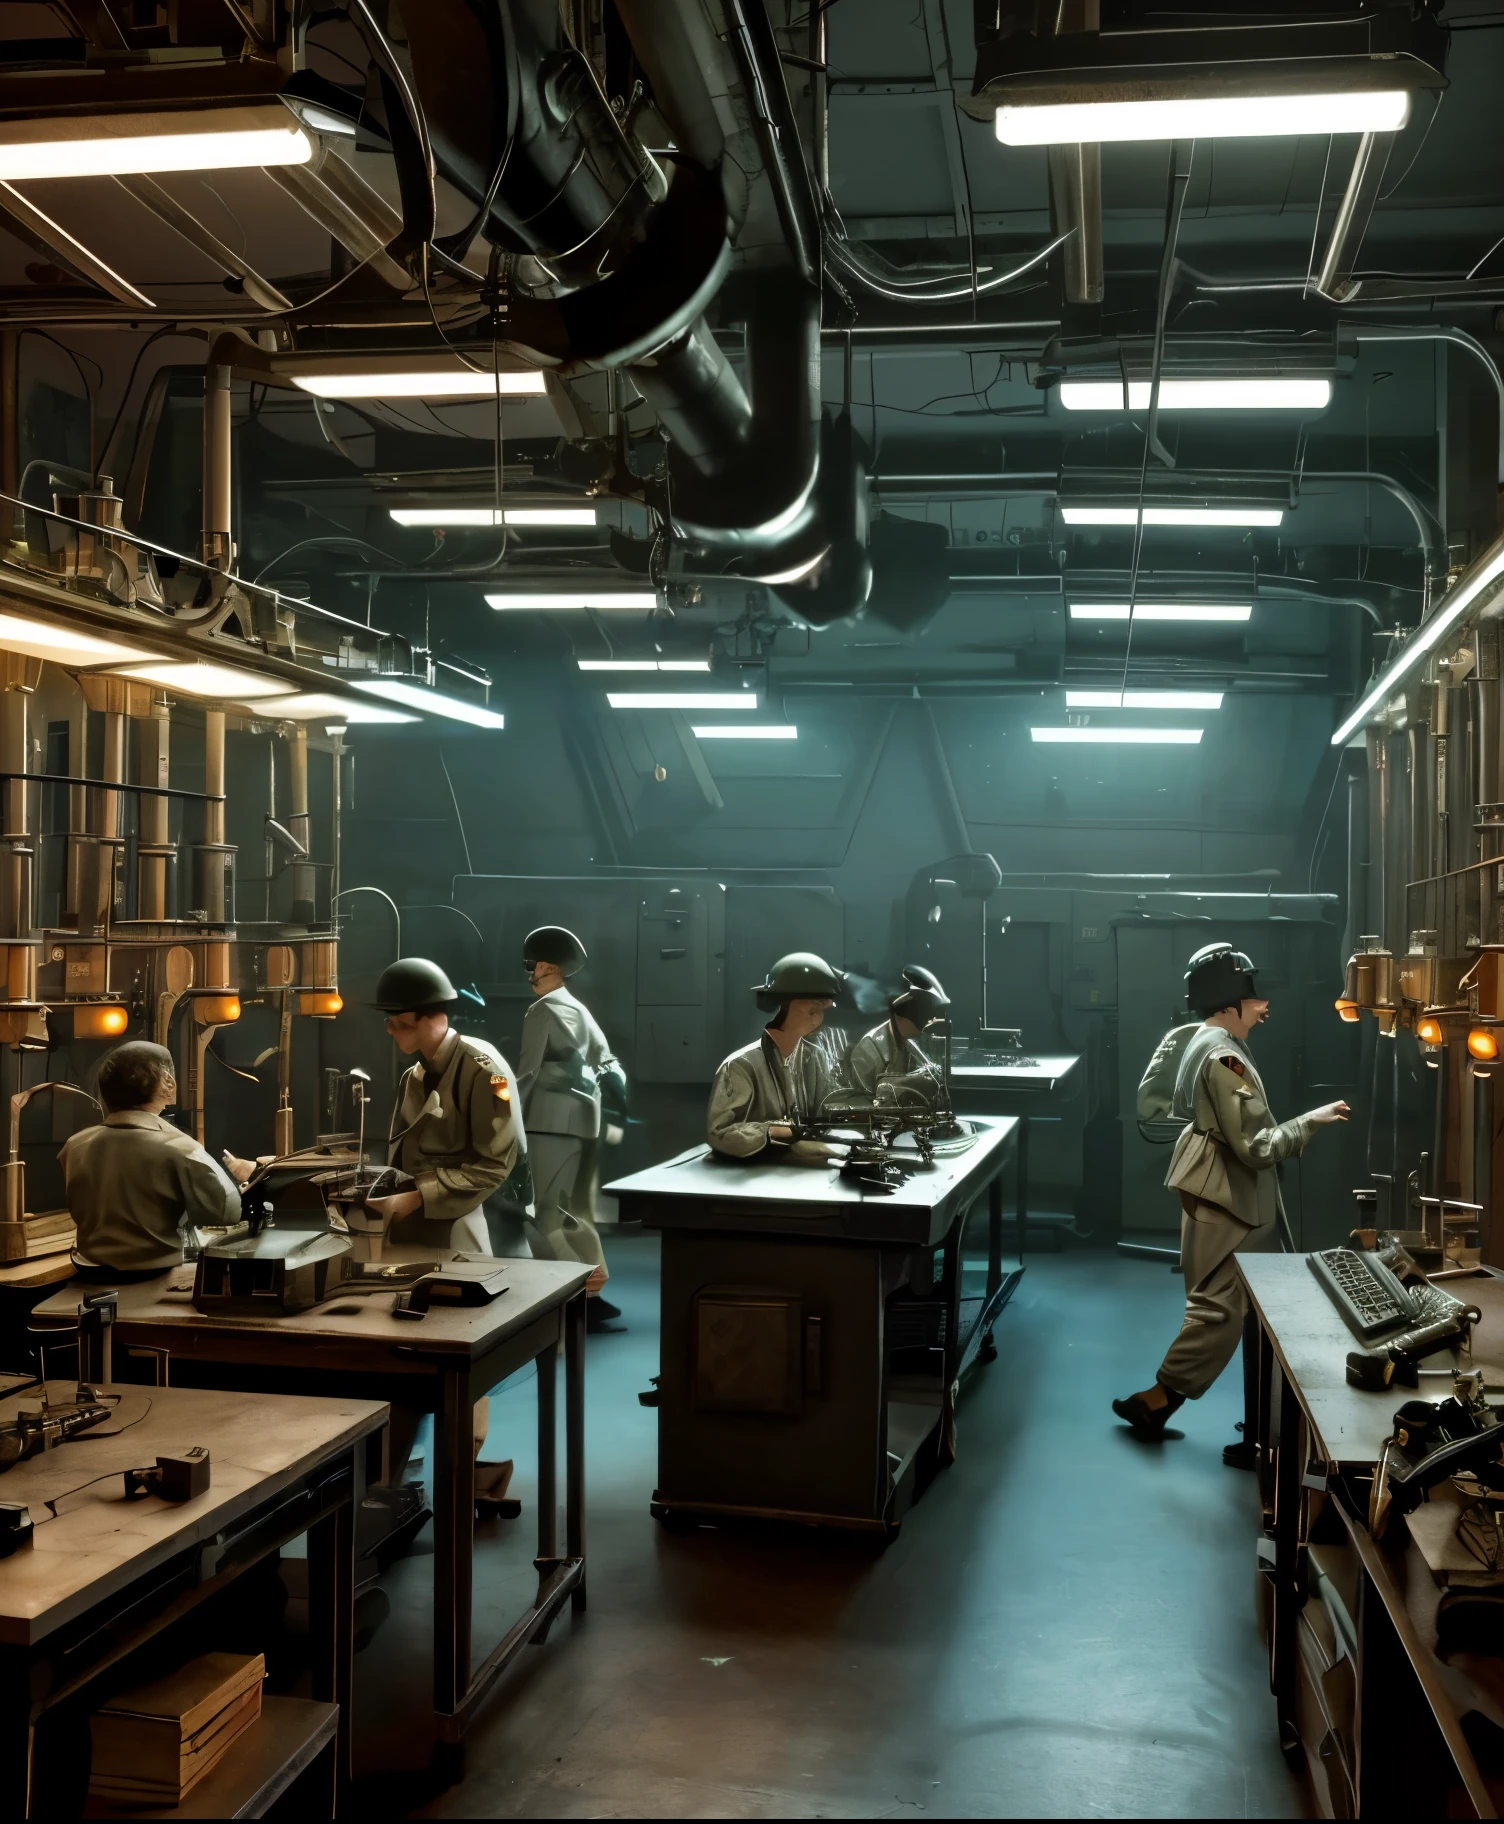  Eine Retro-Science-Fiction-Szene aus dem Zweiten Weltkrieg mit auf einem Labortisch aufgereihten Gehirnen, umgeben von alten wissenschaftlichen Geräten und flackernden Lichtern